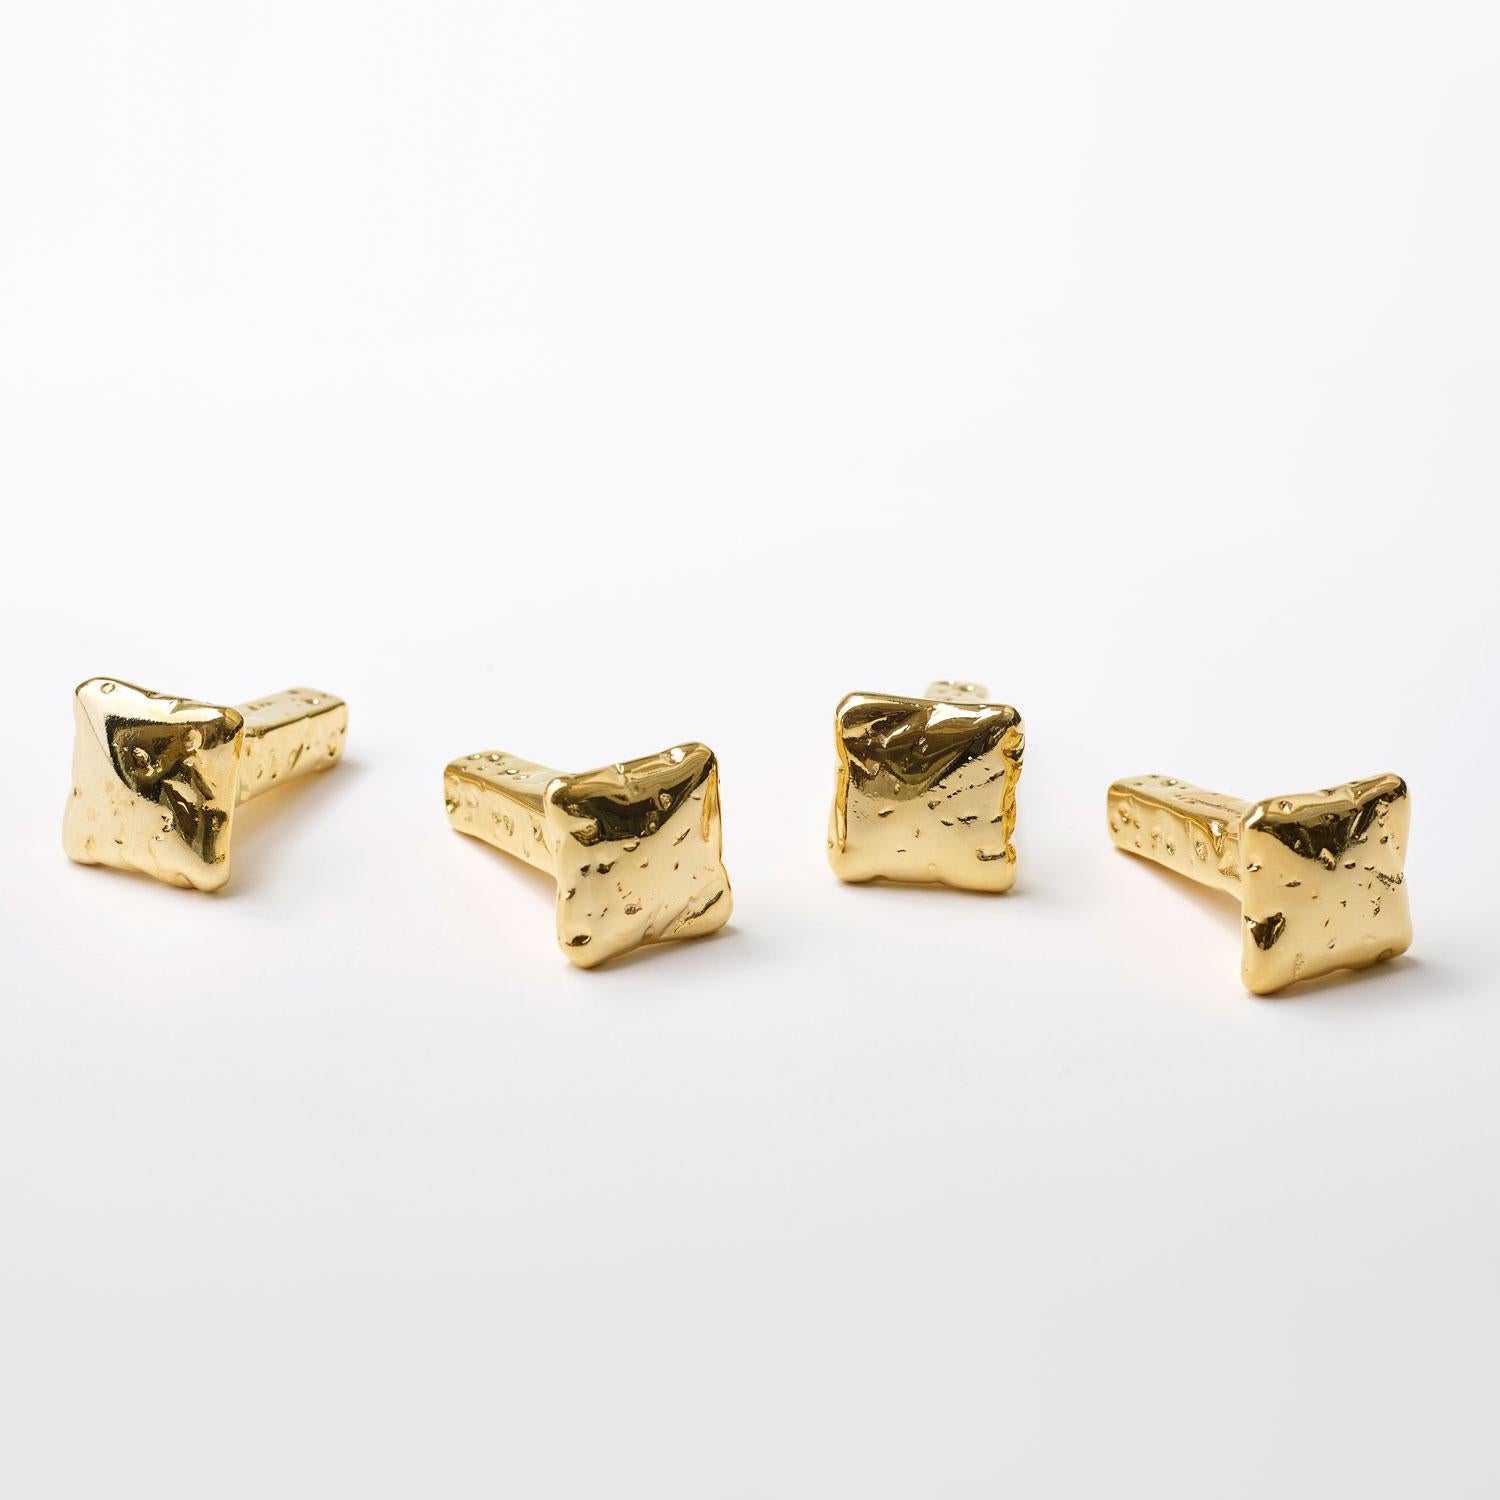 For Sale: Gold (24K Gold) Opinion Ciatti Chiodo Schiaccia Chiodo Set of 4 Clothes Hangers 2